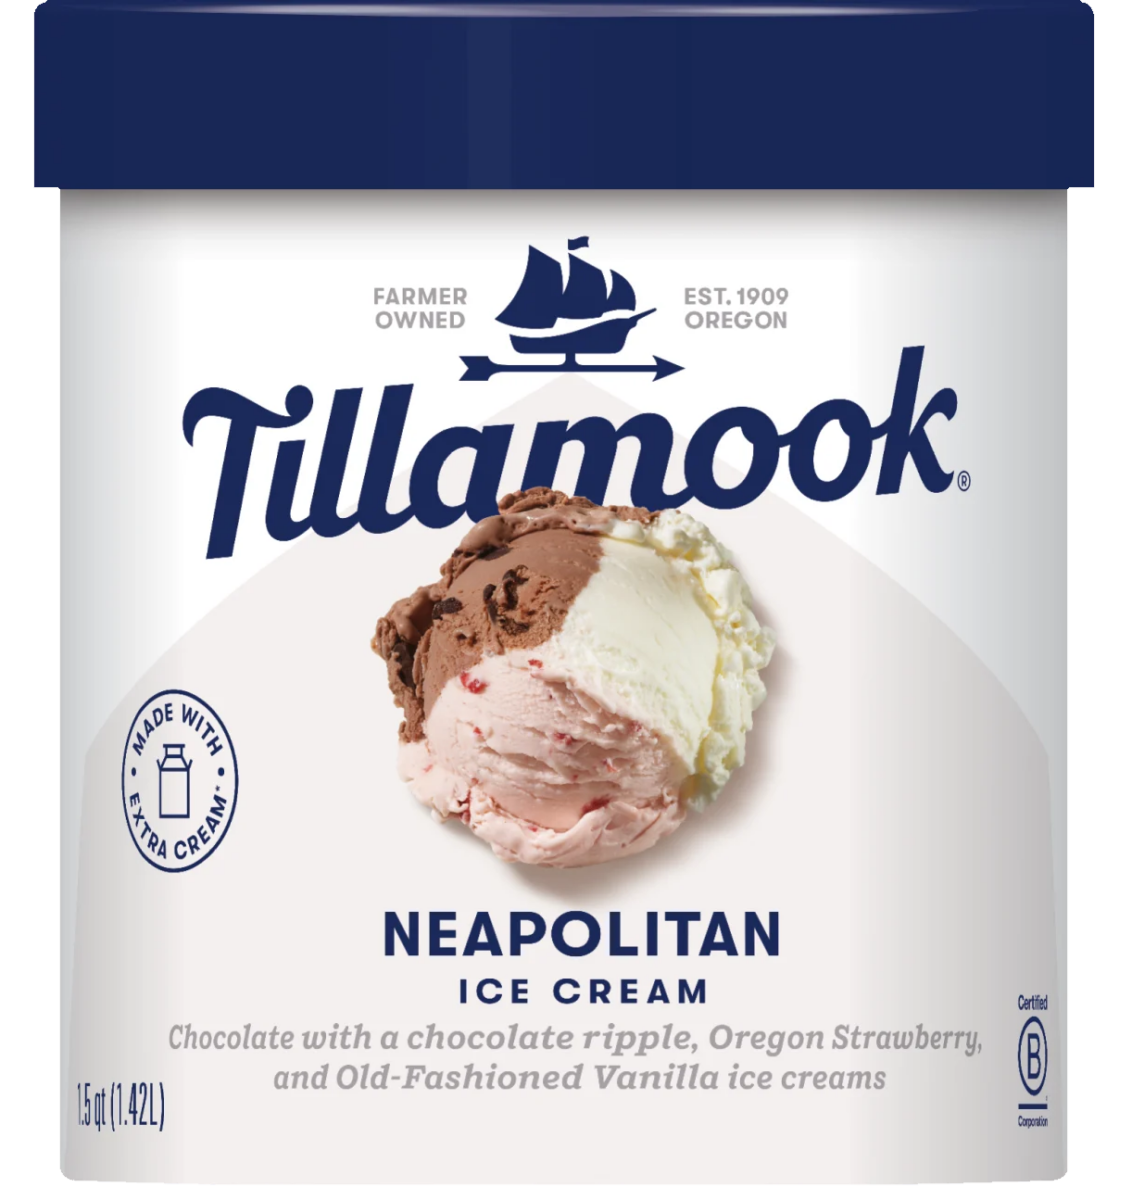 Tillamook gluten-free Neapolitan ice cream product package.